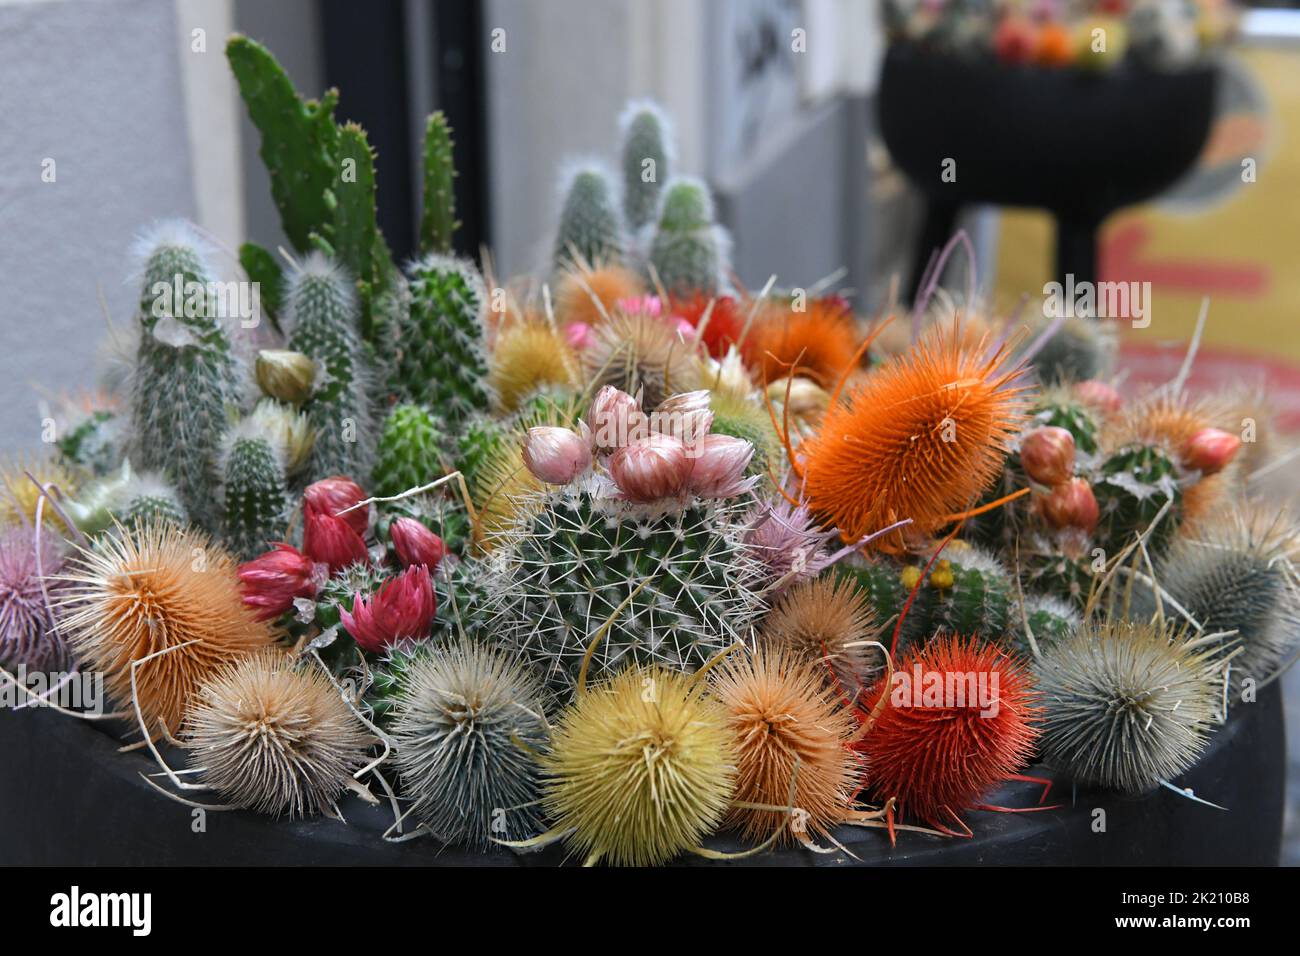 Arreglo floral decorativo con cactus Foto de stock